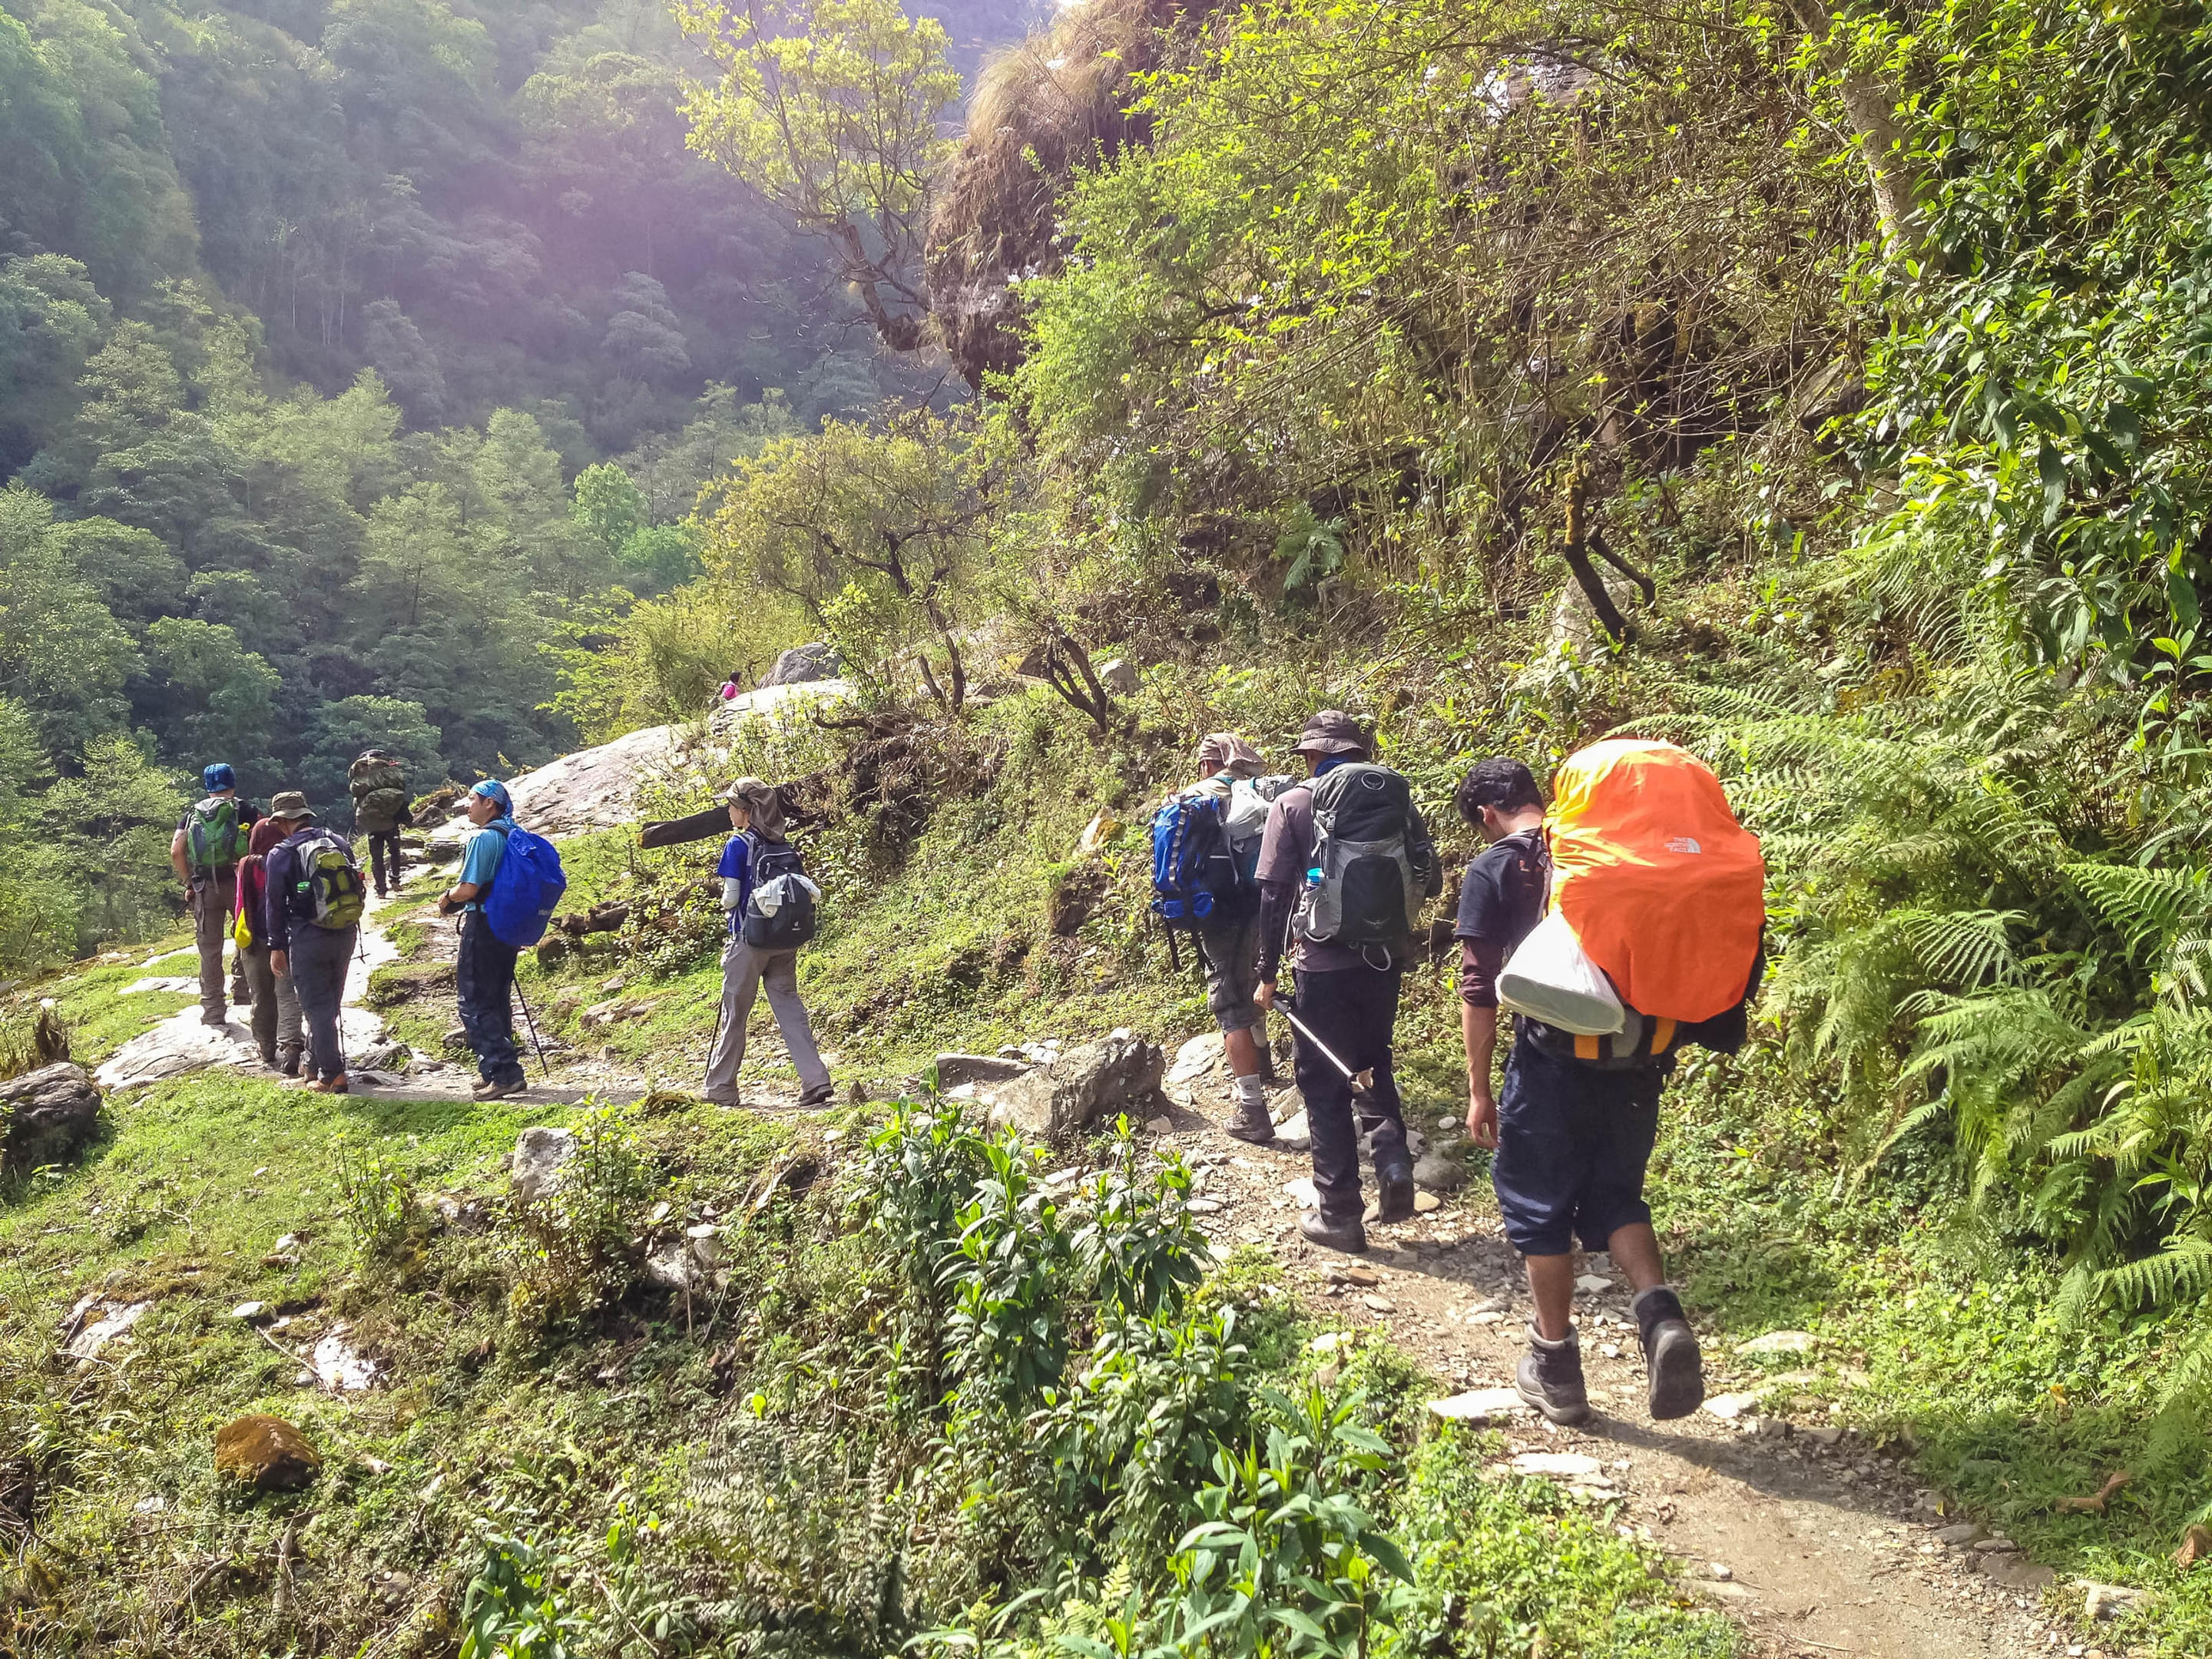 Weekend Treks in Uttarakhand